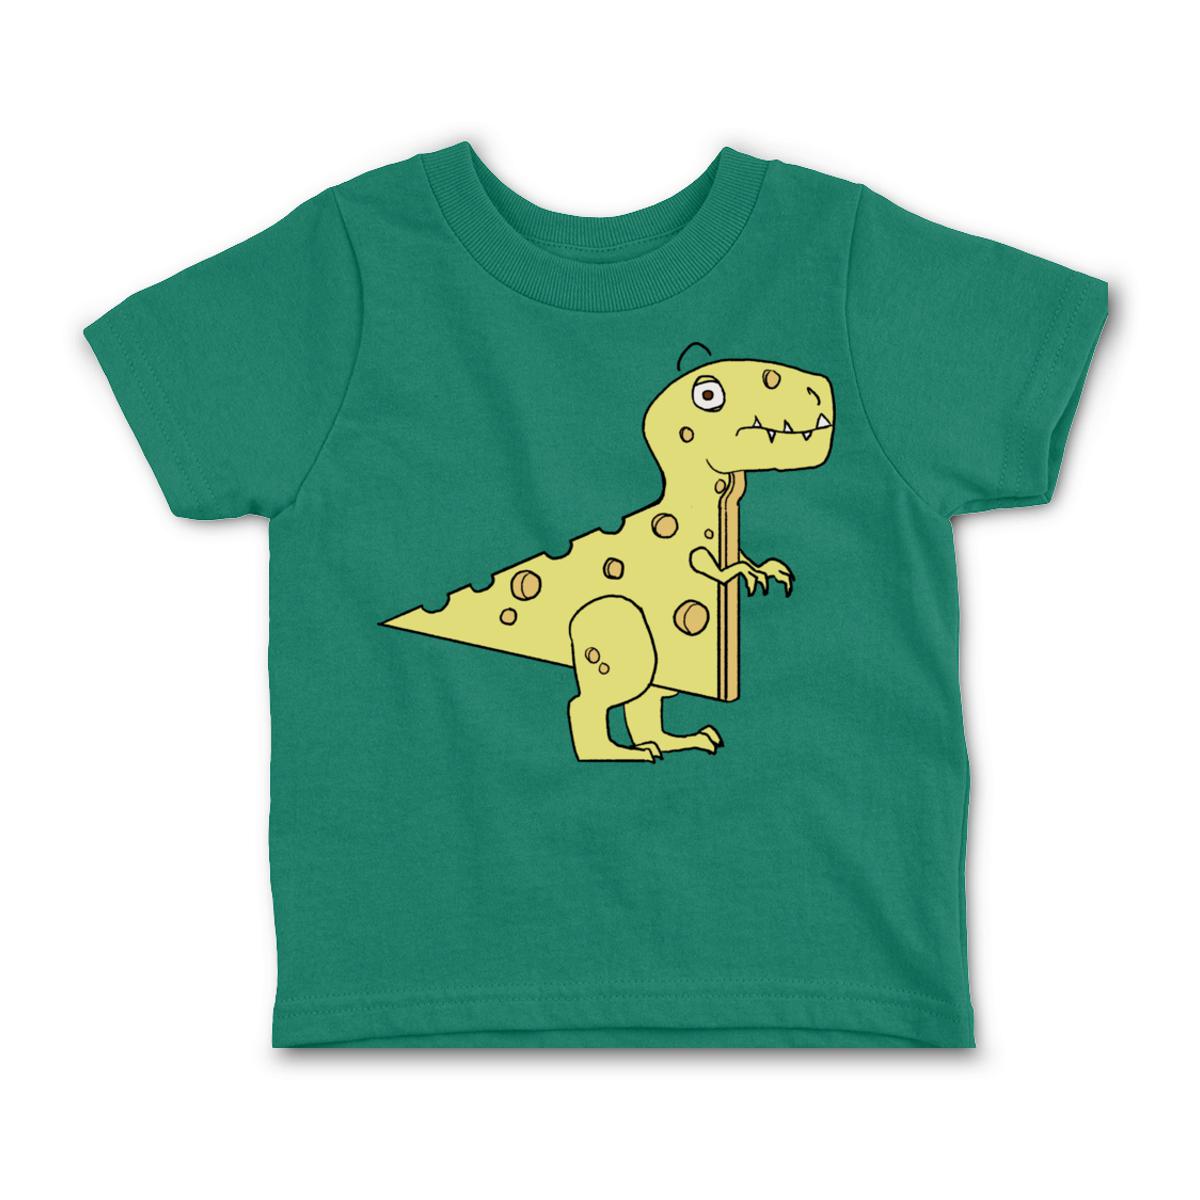 Cheeseosaurus Rex Toddler Tee 2T kelly